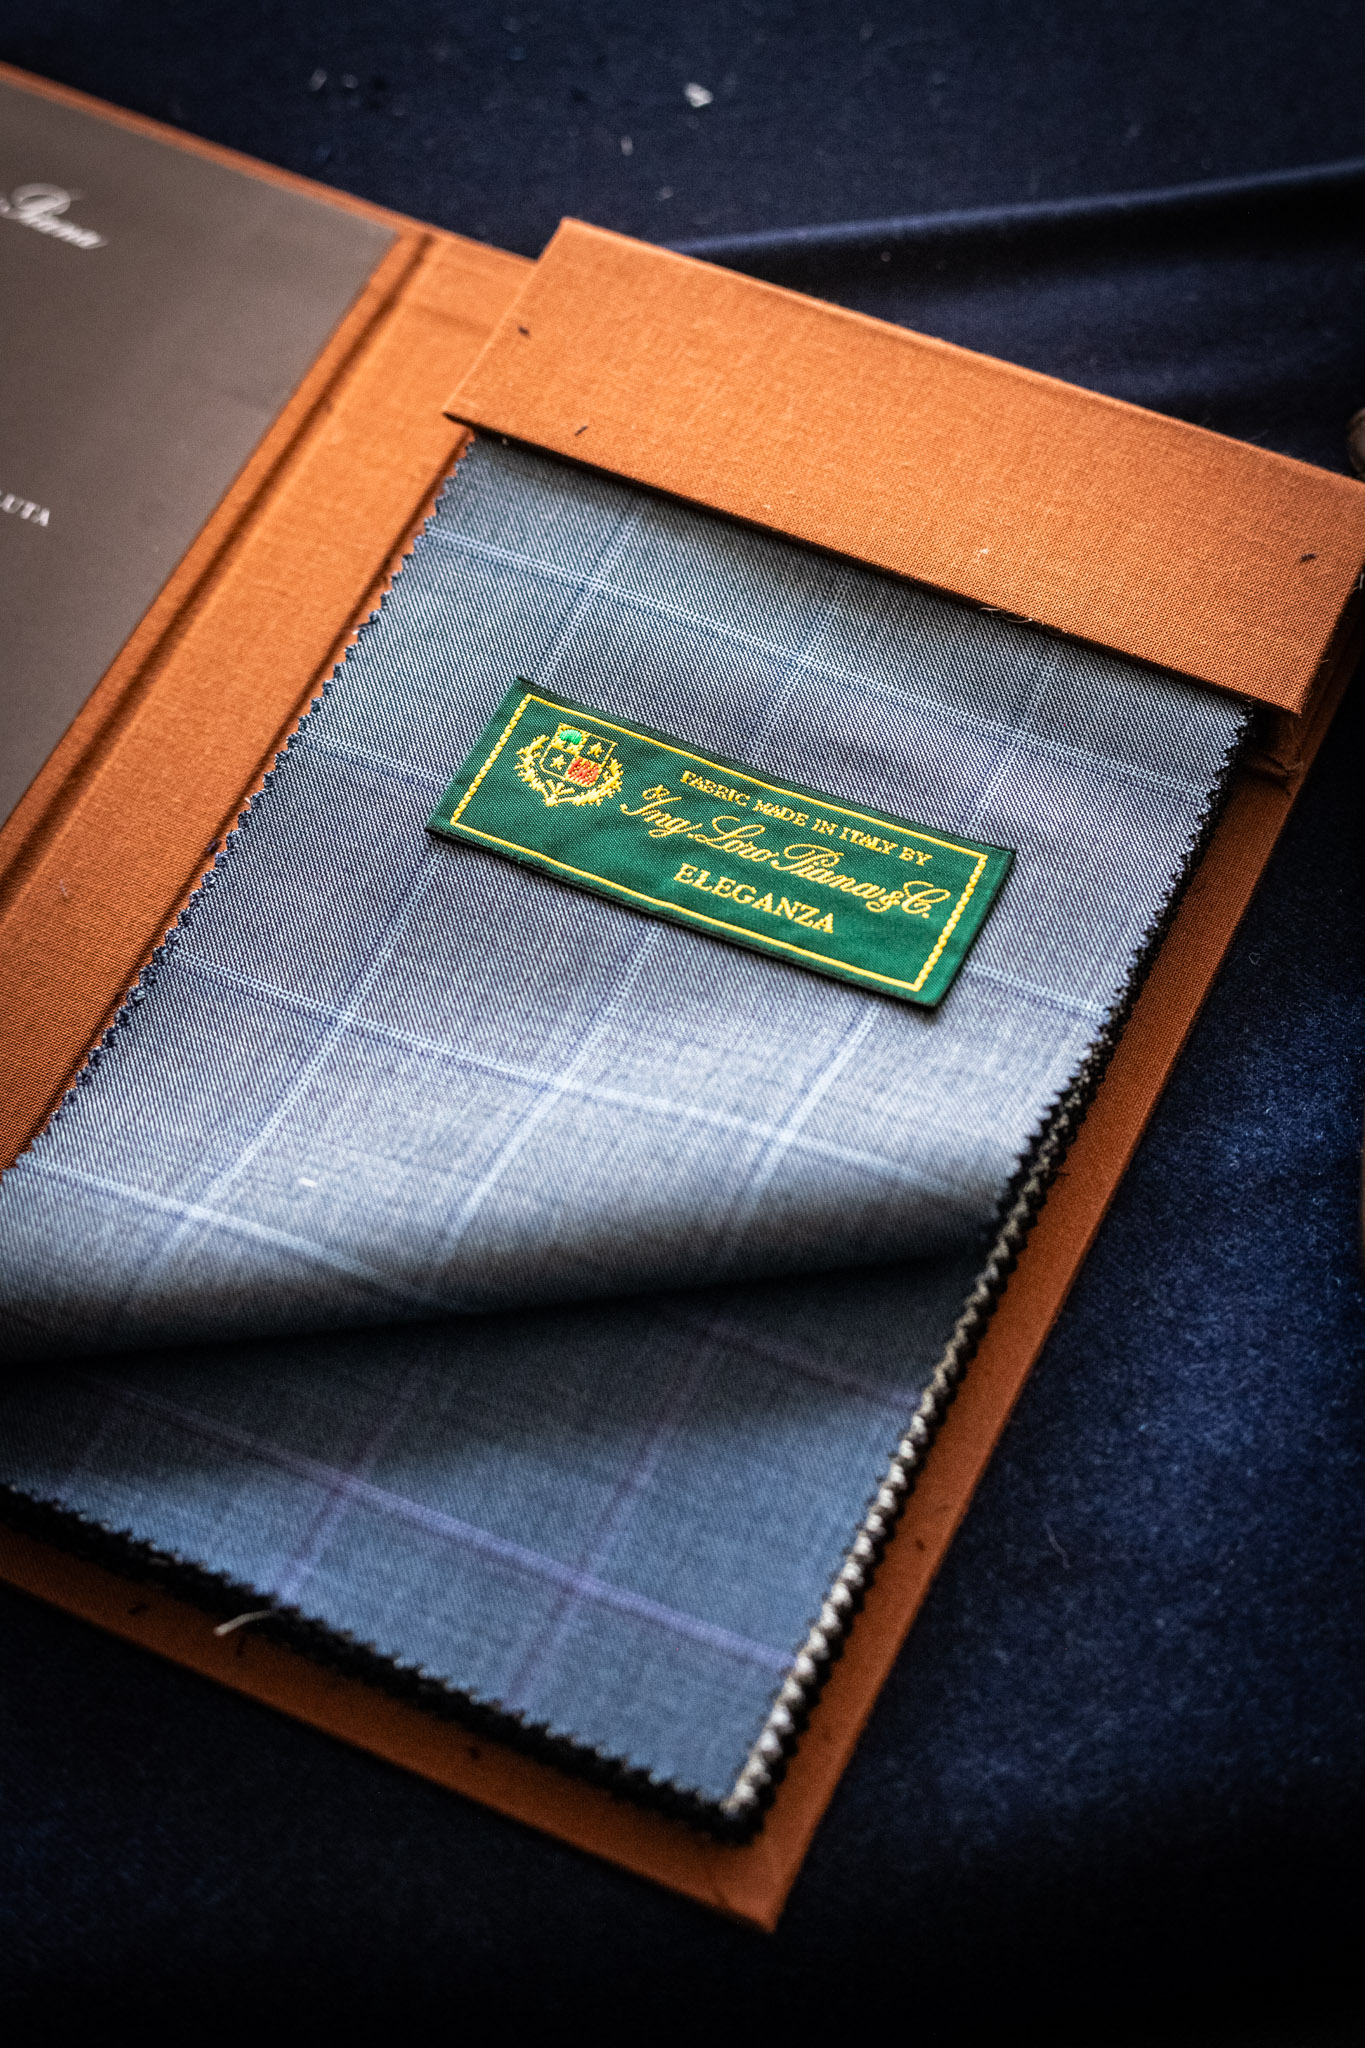 ロロピアーナ（Loro Piana）は、イタリアの高級ファッションブランドで、特に高品質な素材と繊細な製品で知られています。以下は、ロロピアーナが使用する代表的な生地や素材についての一般的な情報です。,カシミア（Cashmere）: ロロピアーナは、極上のカシミア素材を使用した製品で有名です。カシミアは山岳地帯の山羊から取られる繊維で、非常に柔らかく、軽い上に保温性に優れています。,ヴィカナ（Vicuña）: ヴィカナは、ロロピアーナが愛用する希少で貴重な素材の一つです。南アメリカのアンデス地域に生息するヴィカナと呼ばれる動物の毛から作られ、非常に柔らかく、軽い上に優れた保温性を持っています。,ウール（Wool）: ロロピアーナは、最高級のメリノウールを使用した製品も提供しています。メリノウールは柔らかく、通気性があり、保温性が高いため、寒冷な気候にも適しています。,リネン（Linen）: 夏季向けの製品には、通気性に優れたリネン素材が使用されています。リネンは涼しげで快適な着心地を提供します。,シルク（Silk）: シルクはロロピアーナが取り入れる他の素材の一つで、柔らかく滑らかな質感をもたらし、優雅なルックスを演出します。,これらの素材は、ロロピアーナが丹念に選び抜き、最高の品質を保つために使用しているものです。その結果、彼らの製品は非常に高級で耐久性があり、上質な素材へのこだわりが反映されています。ラグジュアリークロス・イタリアフェアを開催中です。,トレンドカラーからクラシックまで、洗練されたロロピアーナ（Loro Piana）のコレクションをお楽しみください。,さらに、限定のボーナスやプレゼントがご利用いただけるかもしれません。,また、フェア期間中は現品限りのお得な生地もご用意しております。,是非、お見逃しなく！ 